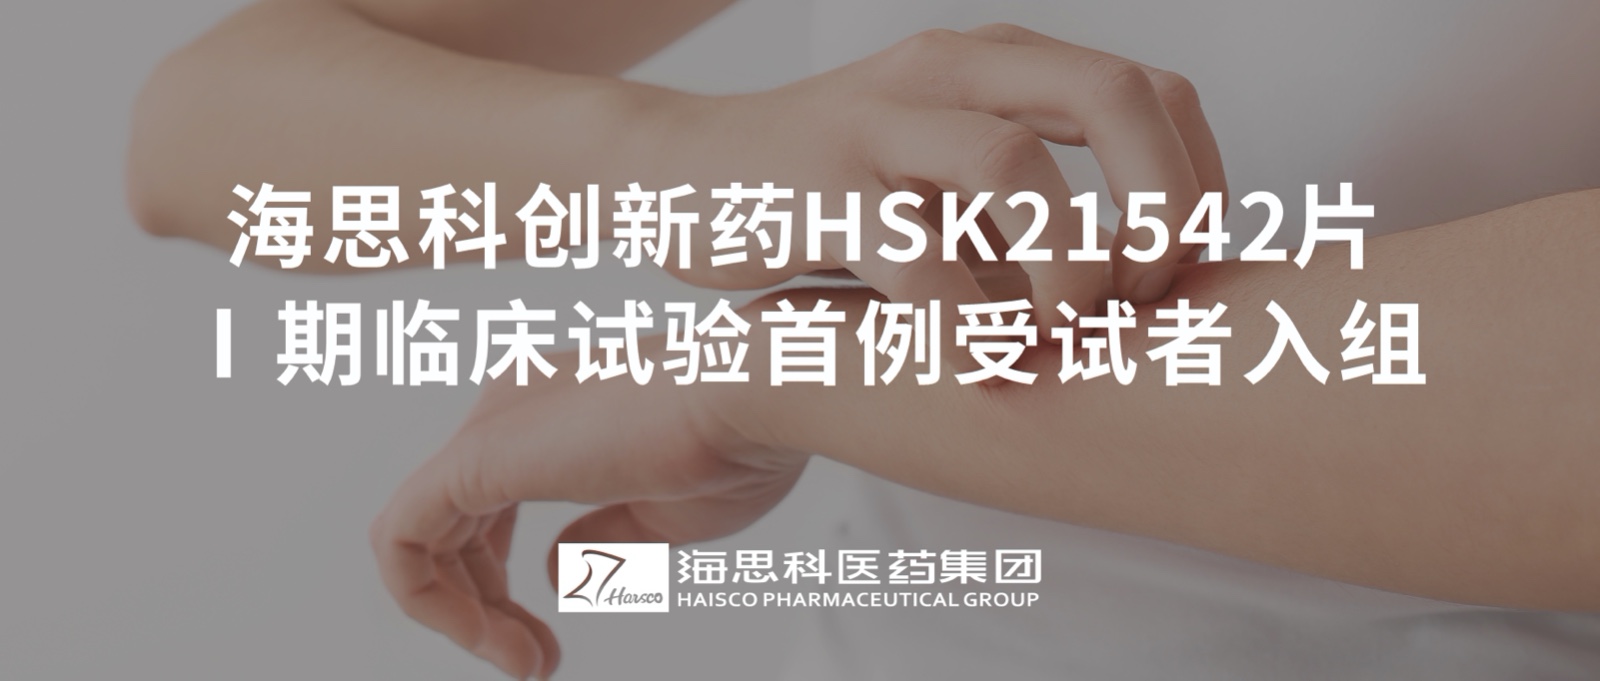 888集团电子游戏官方网站创新药HSK21542片Ⅰ期临床试验首例受试者入组